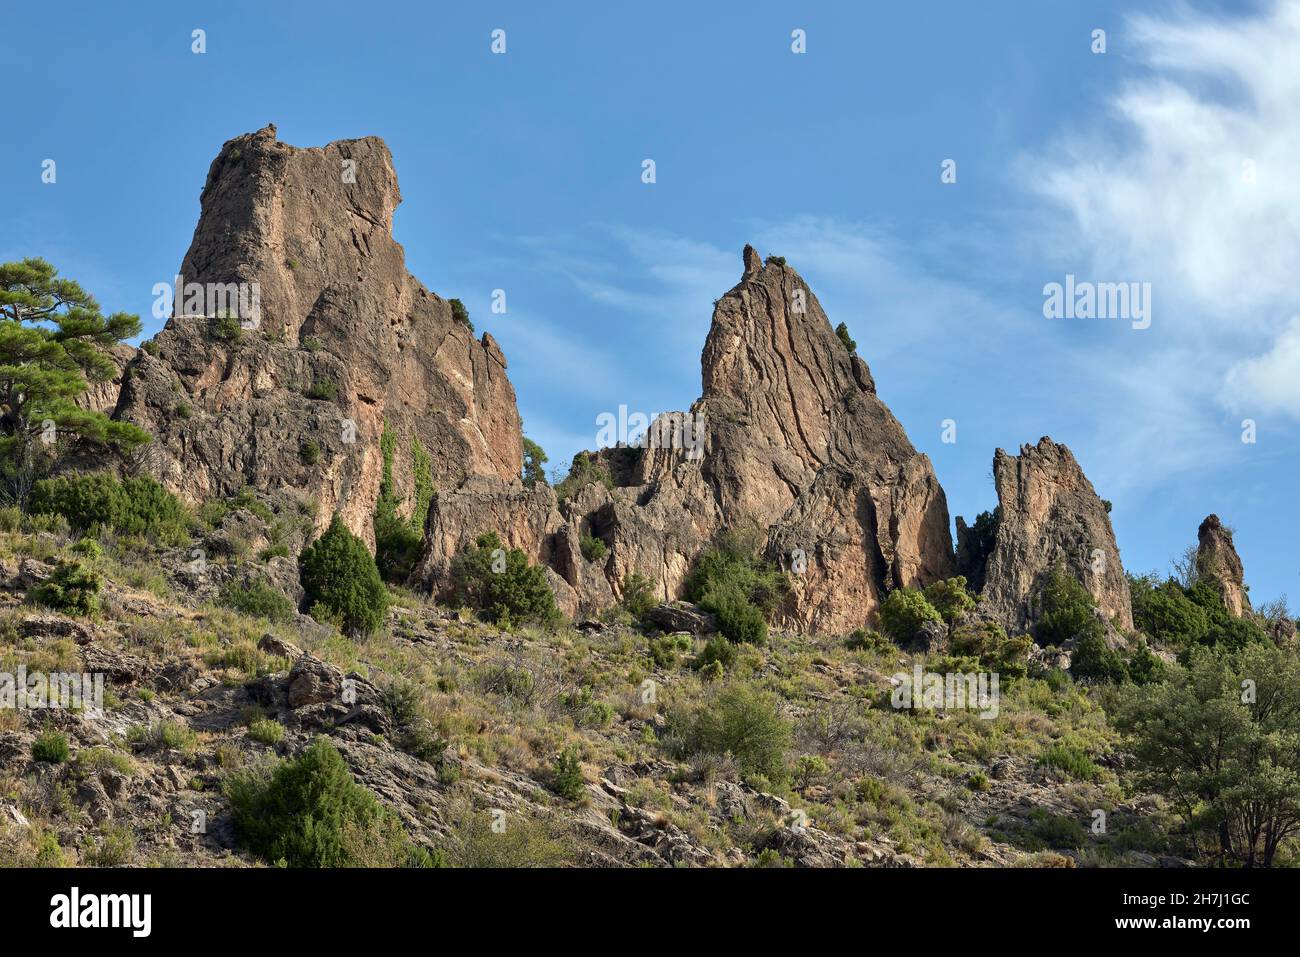 Cuchillos de Arcos. Sierra de Javalambre. Teruel, Aragón. Spain. Stock Photo